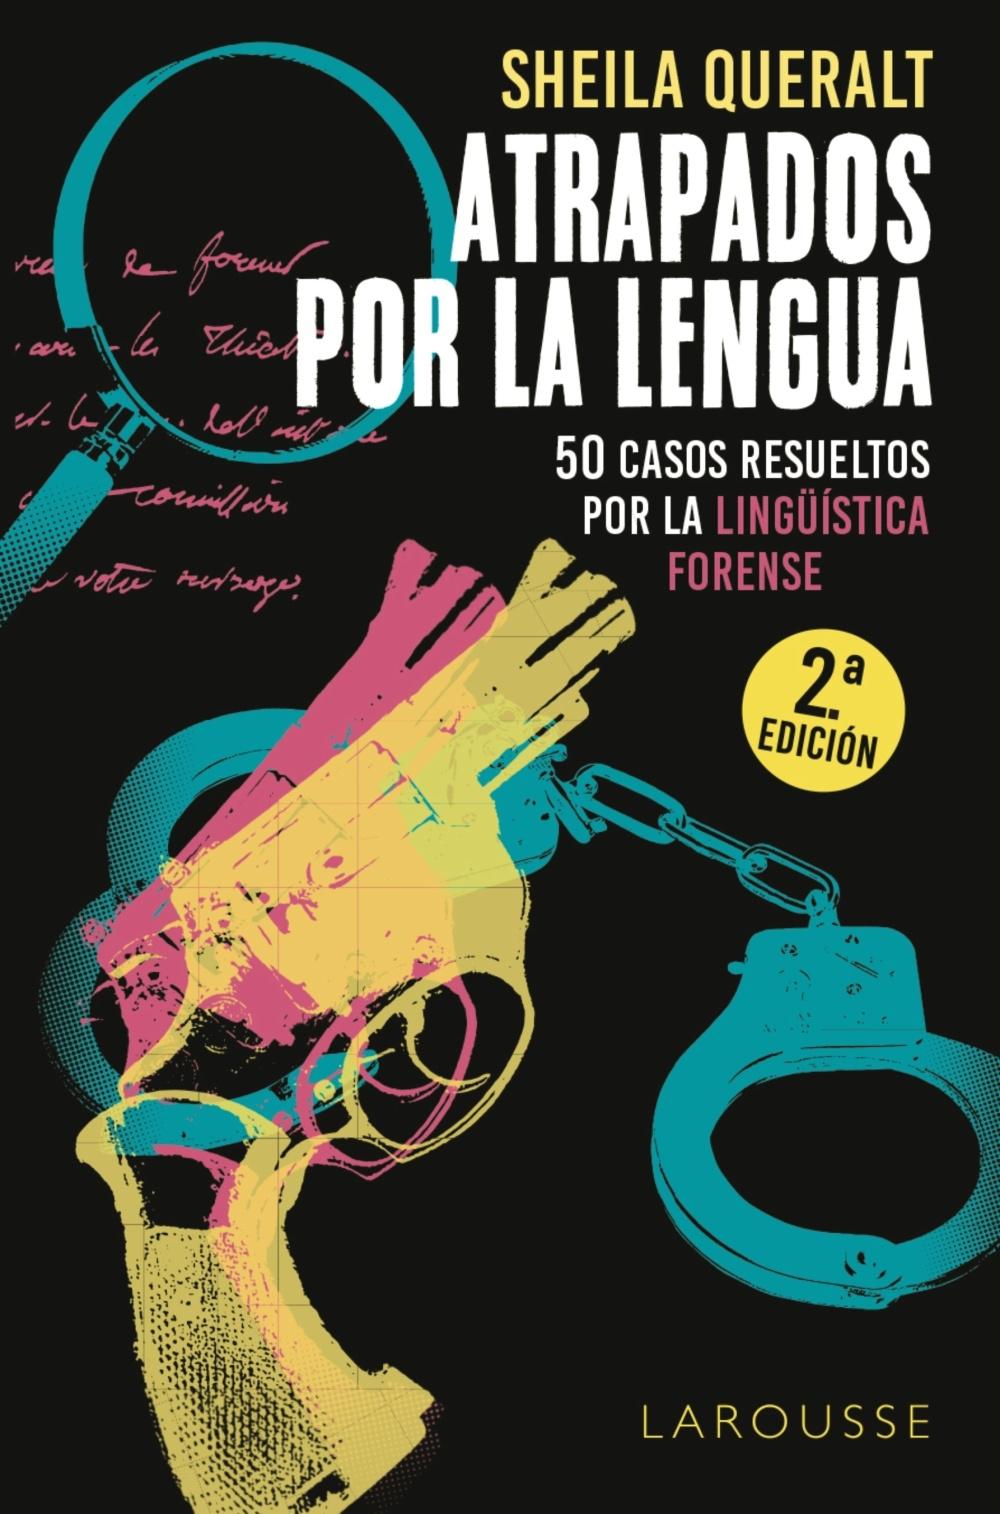 Atrapados por la lengua "50 casos resueltos por la lingüística forense"